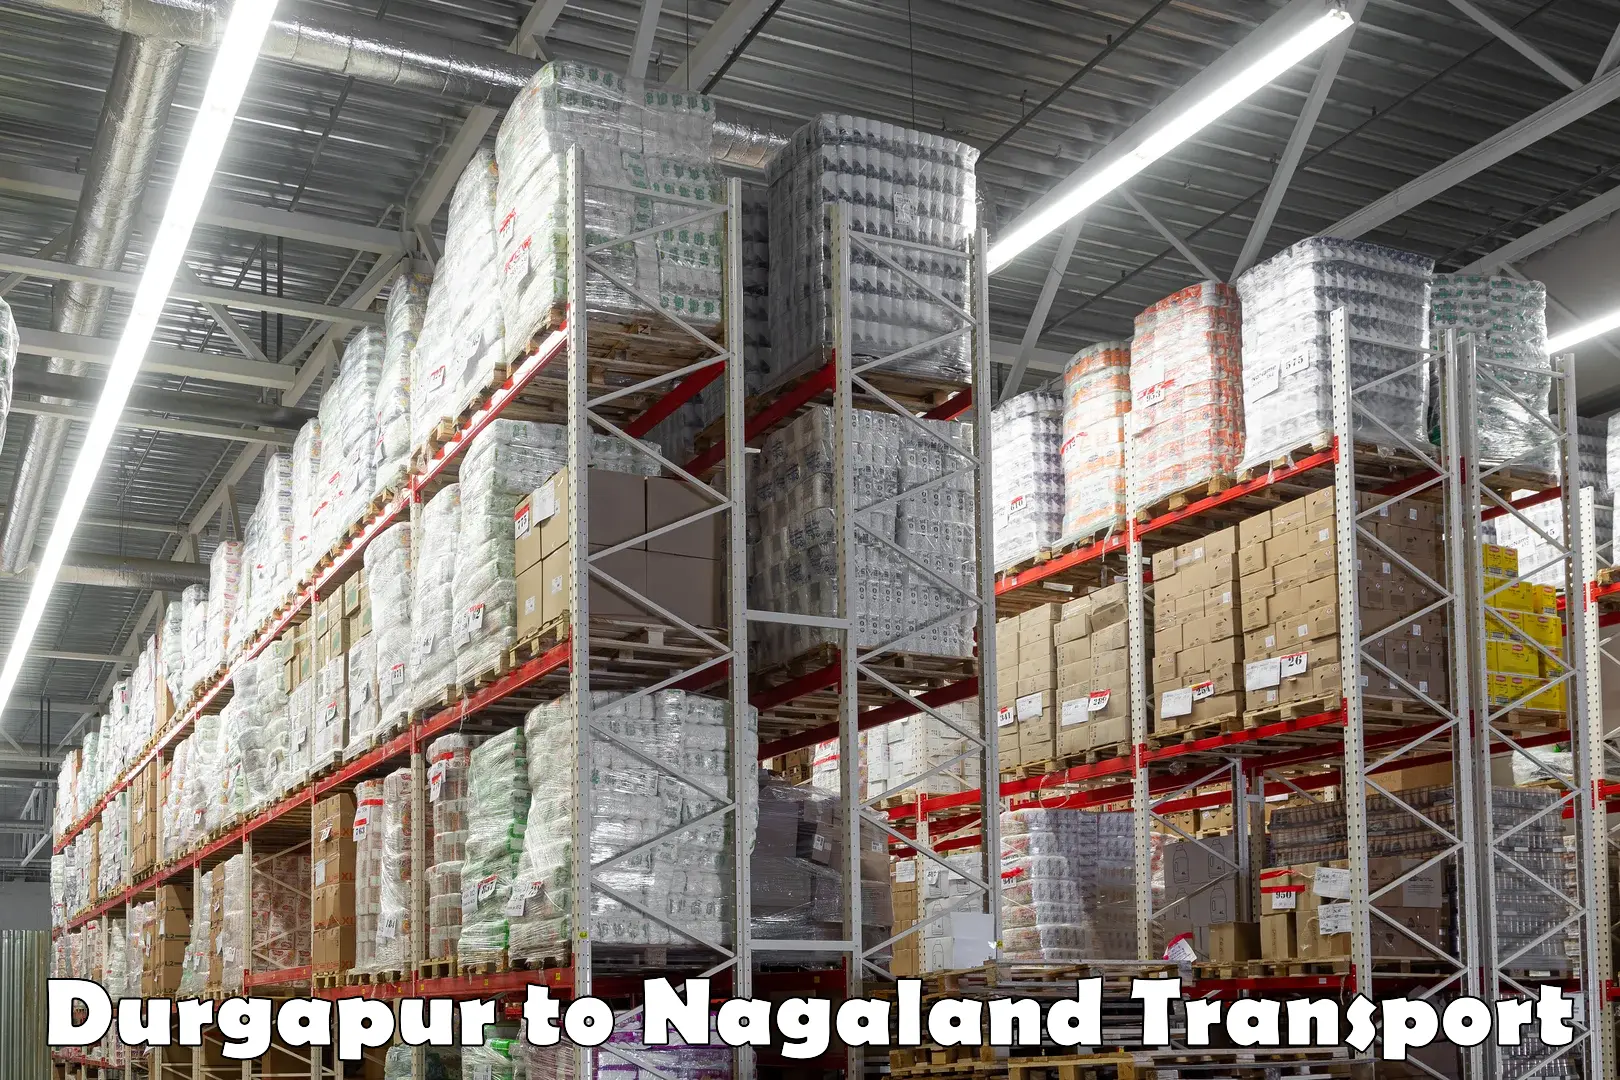 Vehicle parcel service Durgapur to Dimapur